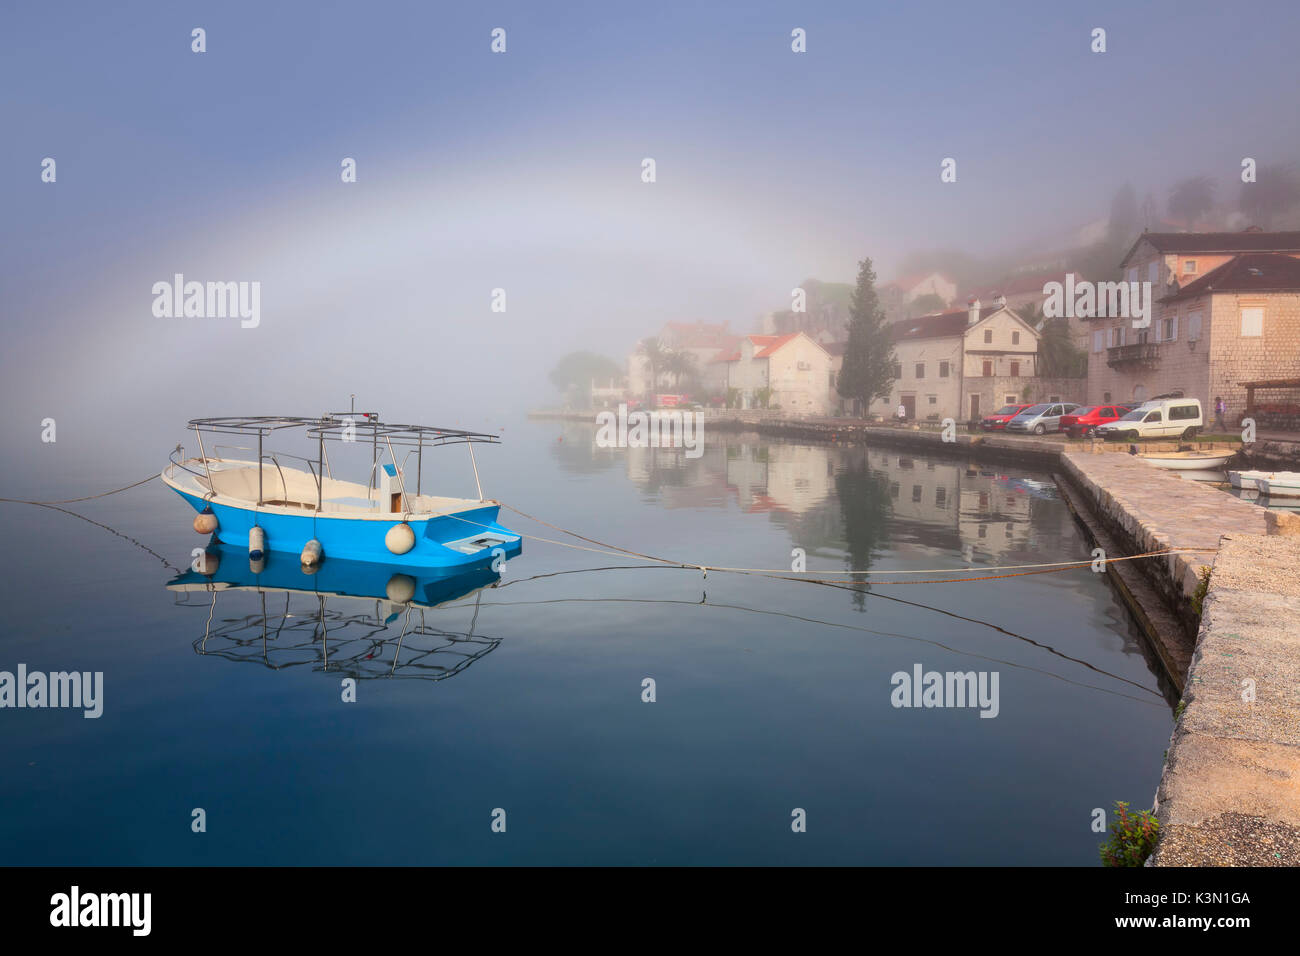 Perast è una vecchia città sulla Baia di Kotor in Montenegro. Nella foto una mattinata nebbiosa sulla baia con un po' di arcobaleno. Foto Stock